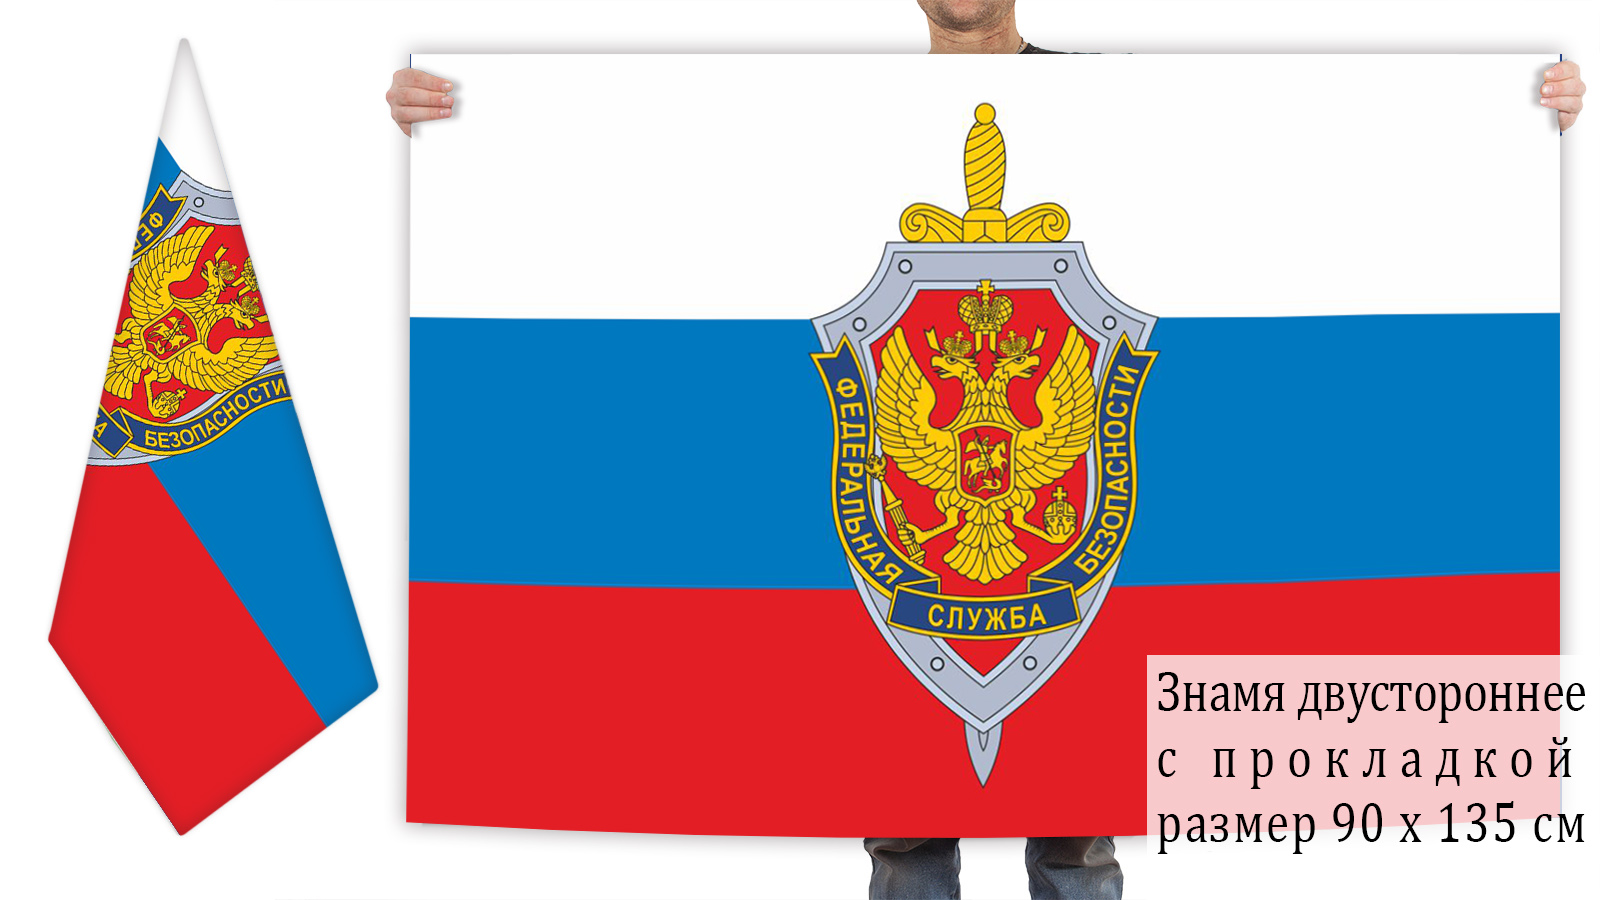 Двусторонний флаг с эмблемой ФСБ на фоне Триколора